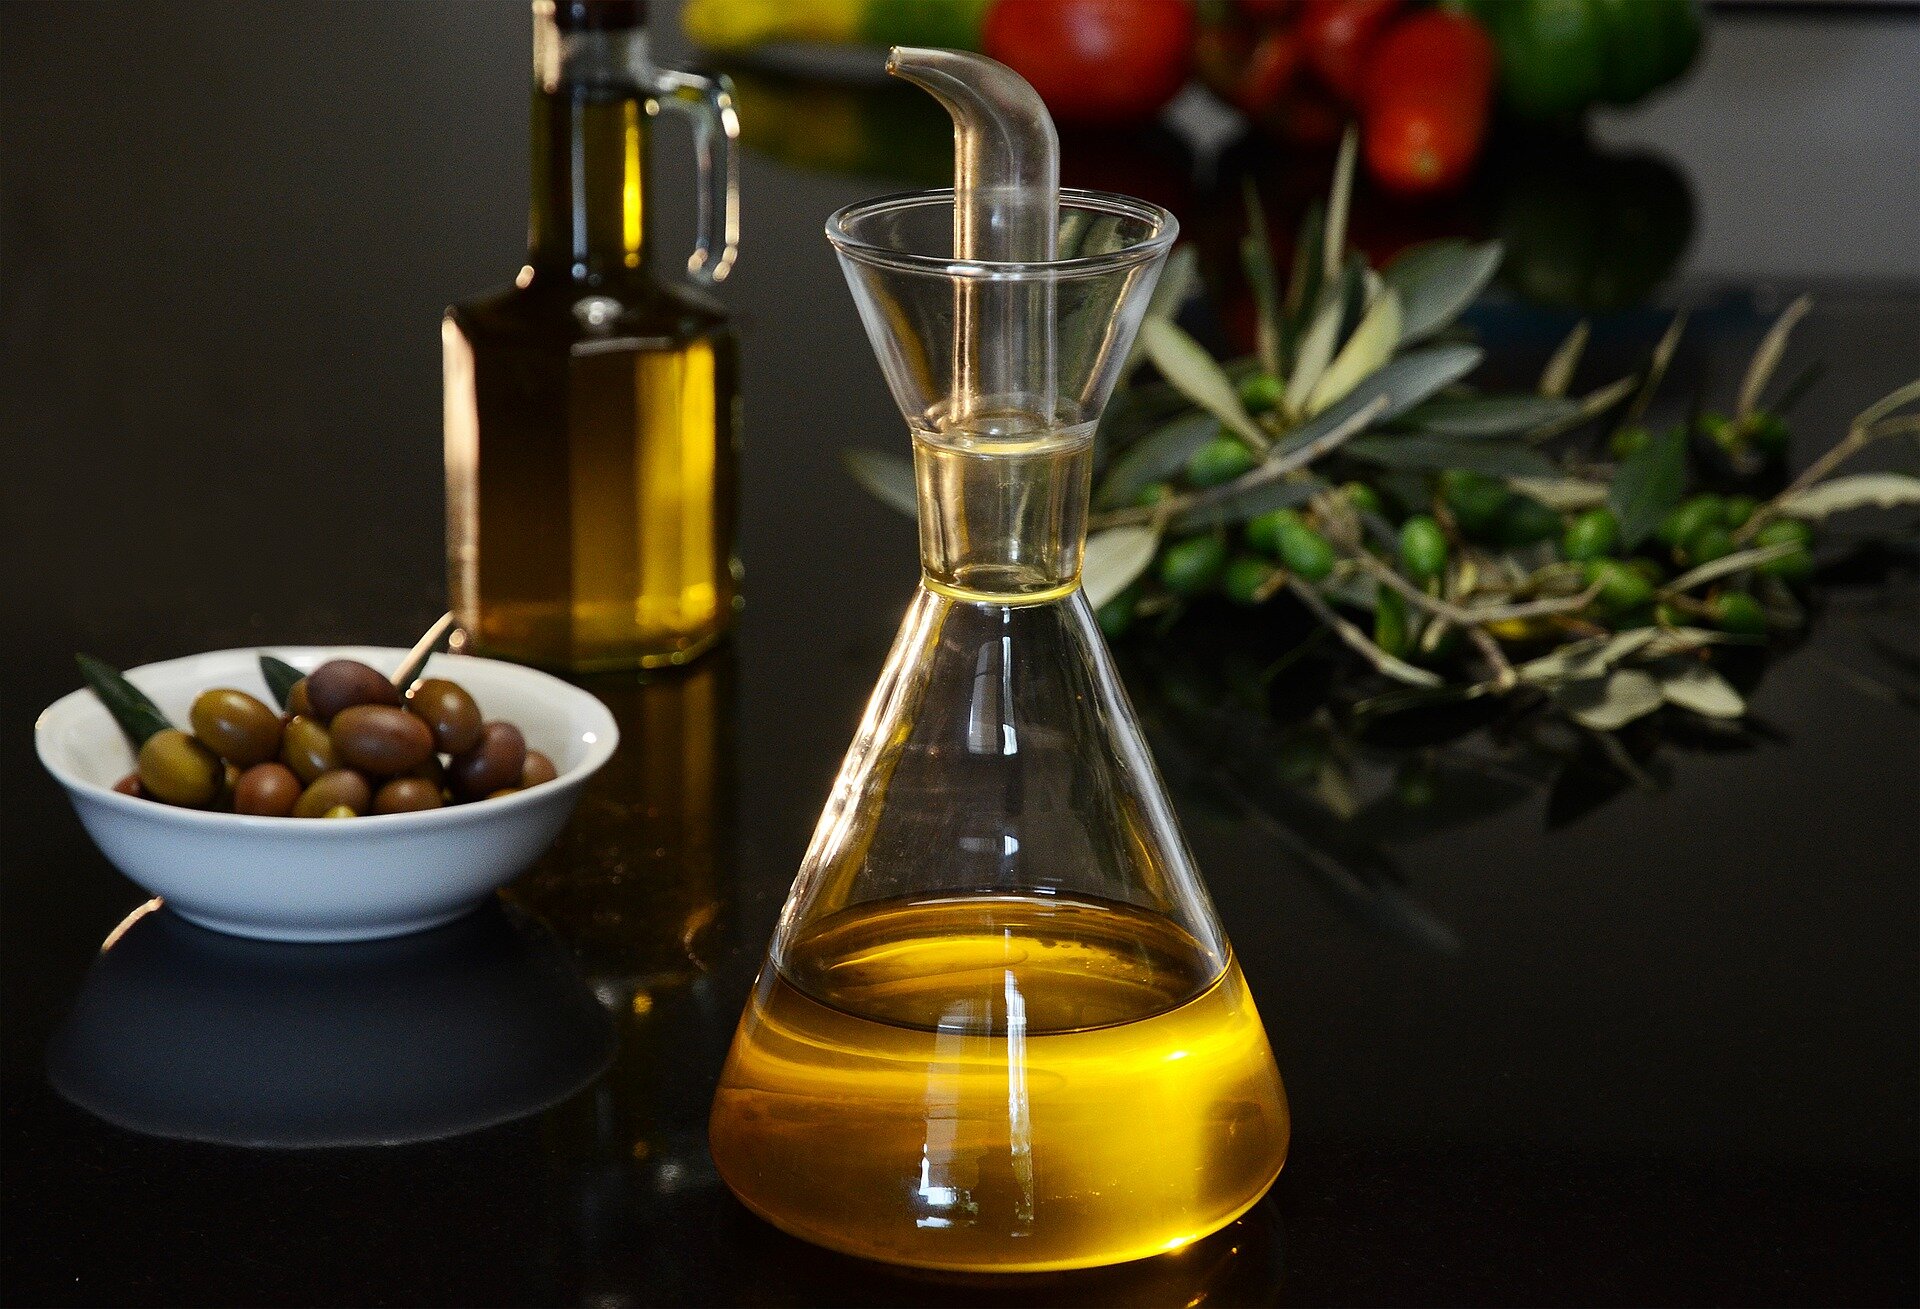 Badania sugerują, że codzienne spożywanie oliwy z oliwek zmniejsza ryzyko rozwoju demencji